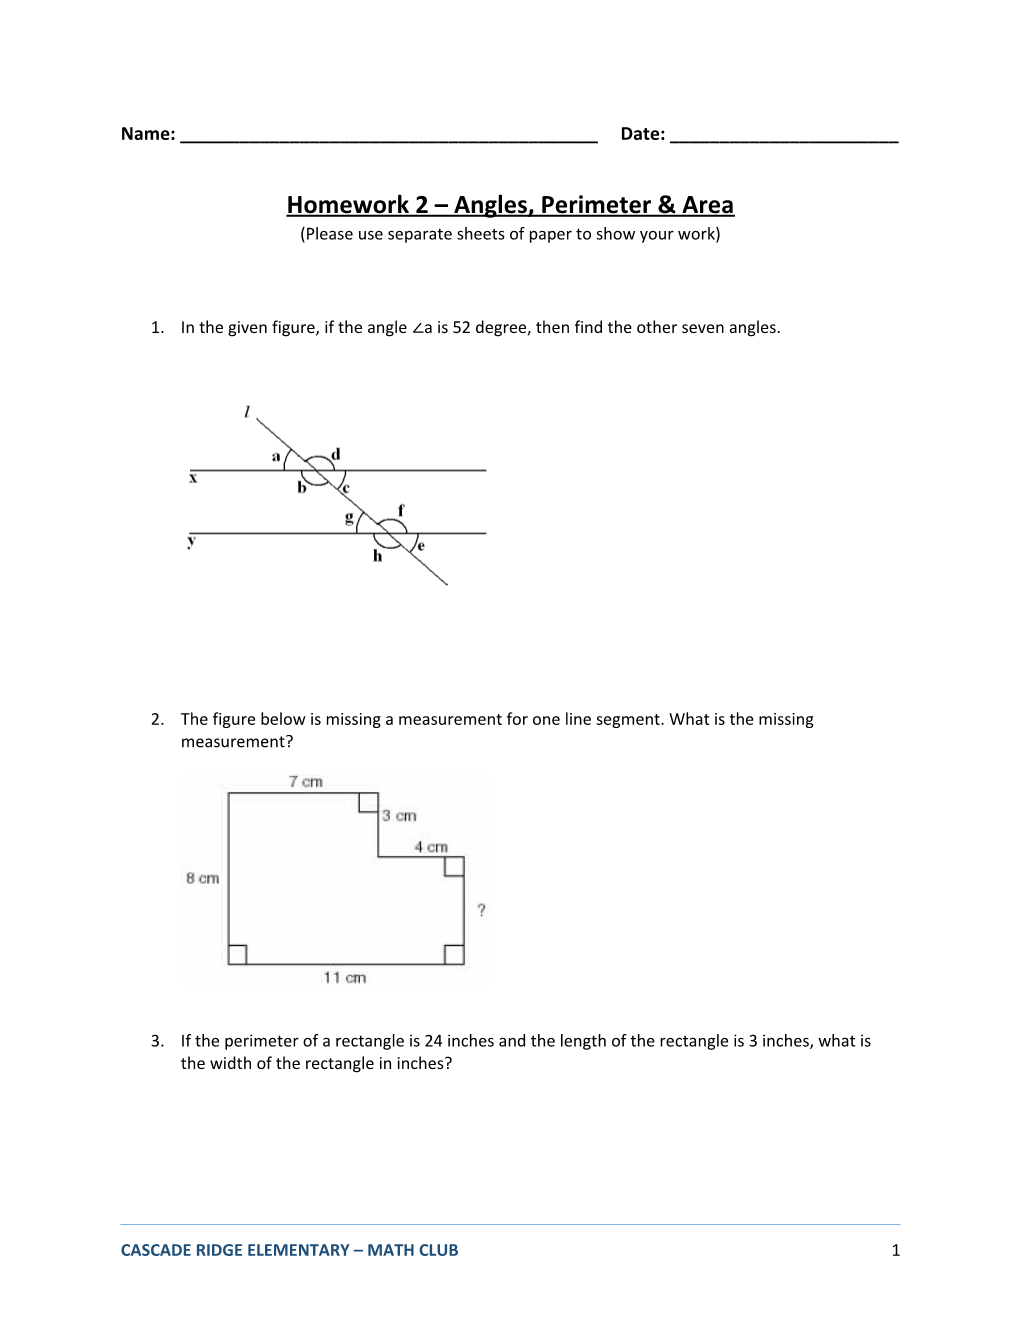 Homework 2 Angles, Perimeter & Area